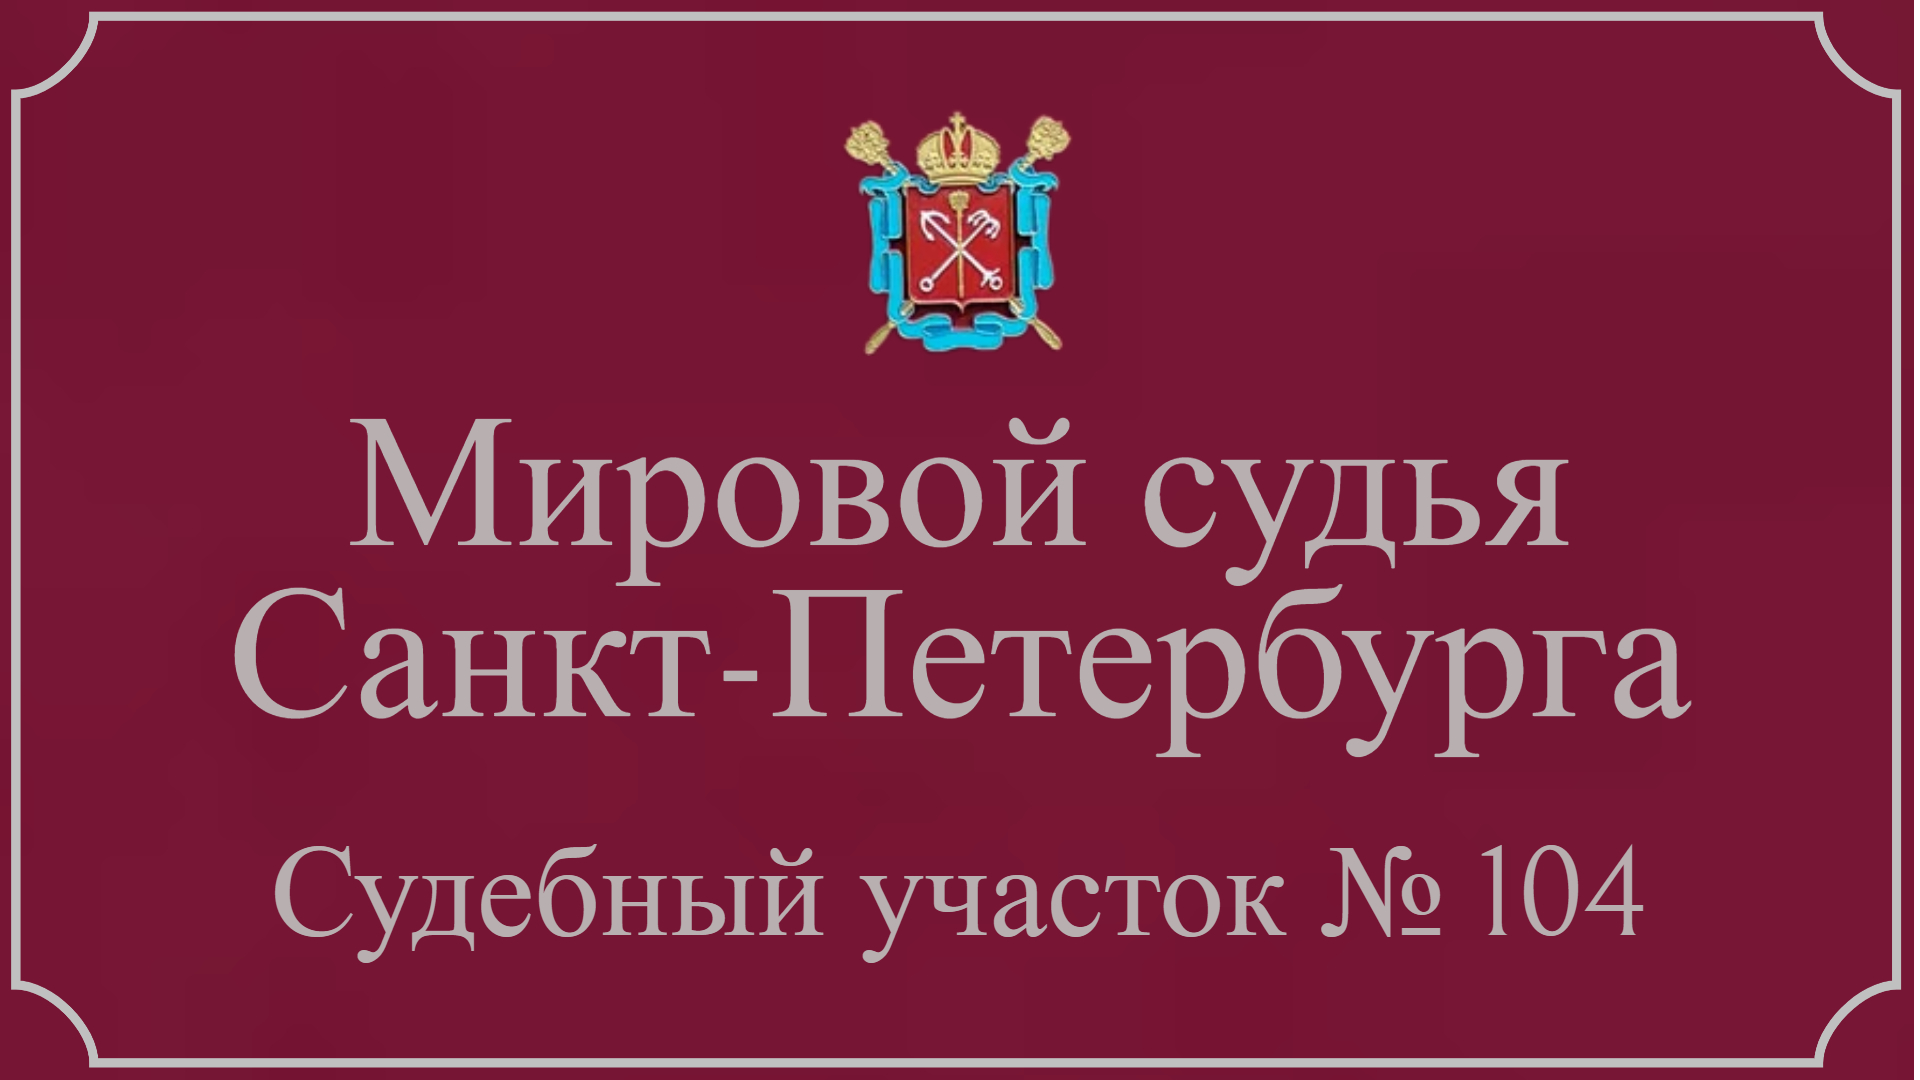 Информация по 104 судебному участку в Санкт-Петербурге.